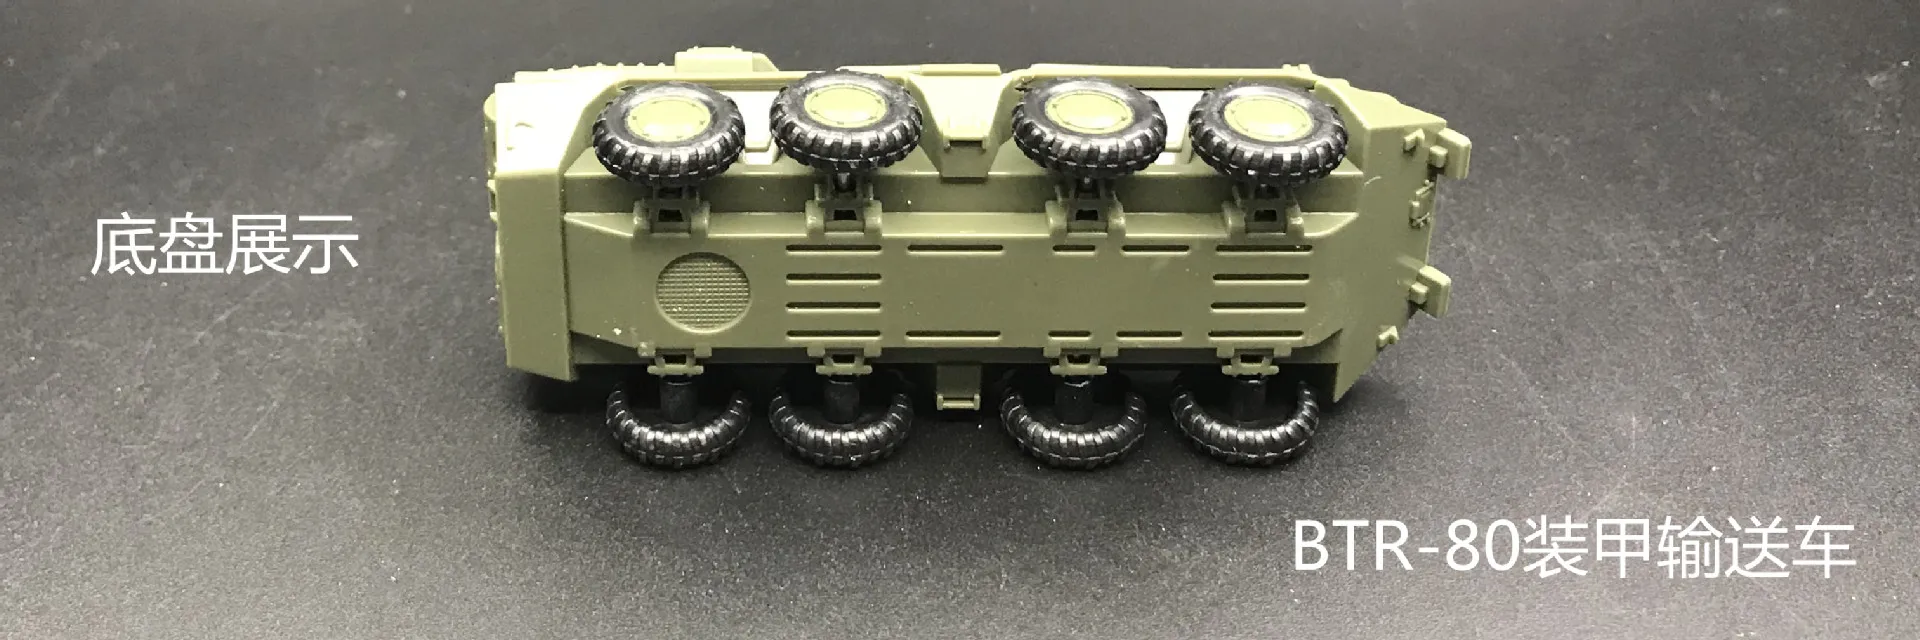 1: 72 военный автомобиль M35 грузовик Btr80 бронированный автомобиль 1/72 модель «сделай сам» головоломка сборная игрушка